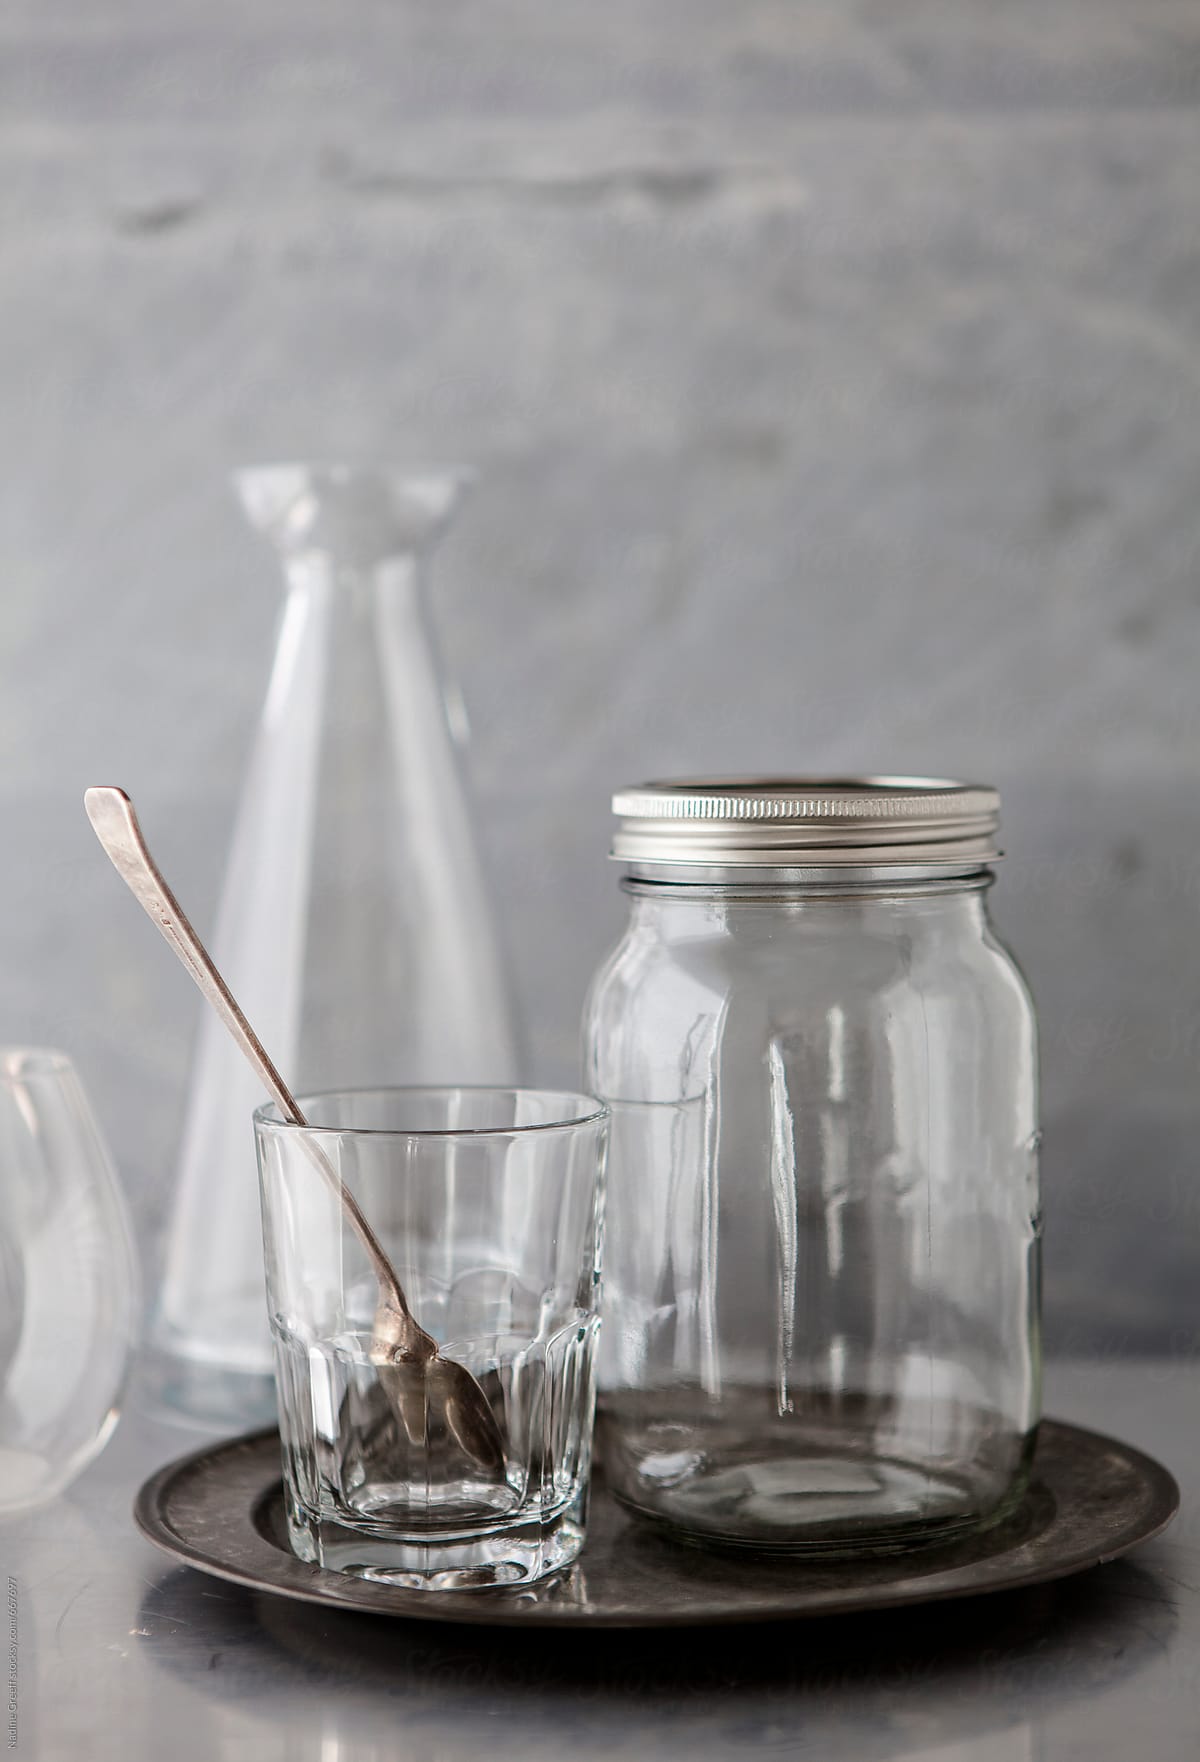 Kitchen Glassware, Drinking Glass, Glass Jar, Jug On Grey Plate by Stocksy  Contributor Nadine Greeff - Stocksy